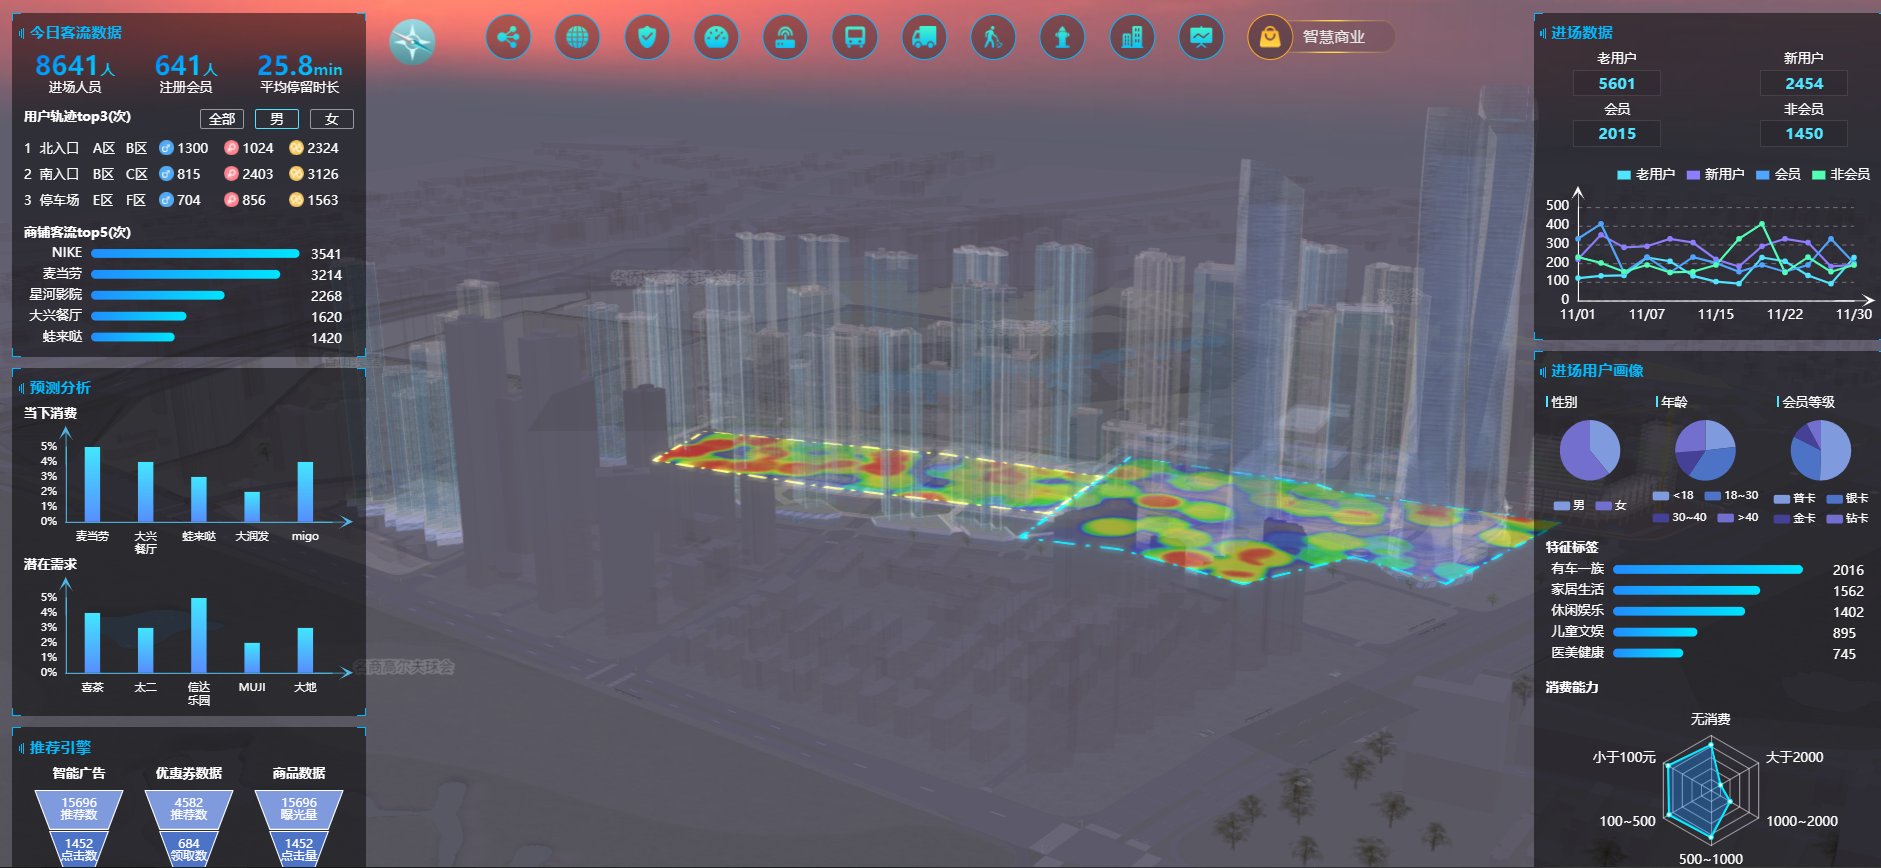 智慧城区可视化解决方案概述